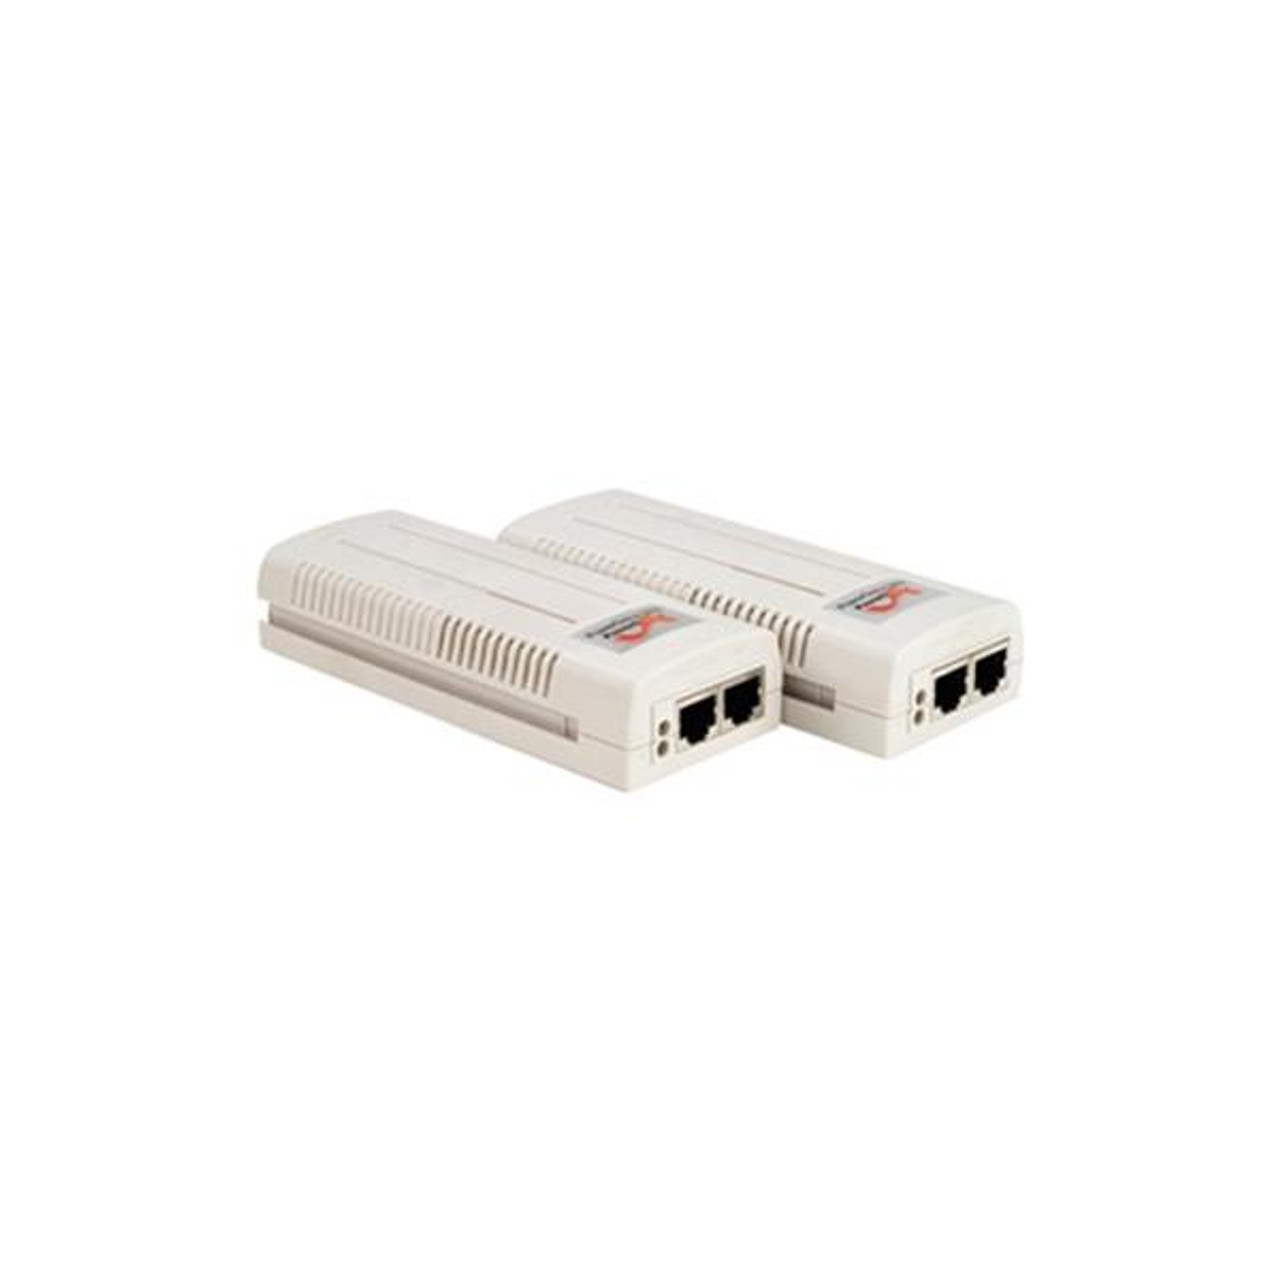 PD-7001G Microsemi PowerDsine 7001G Gigabit Single Port Power over Ethernet Midspan